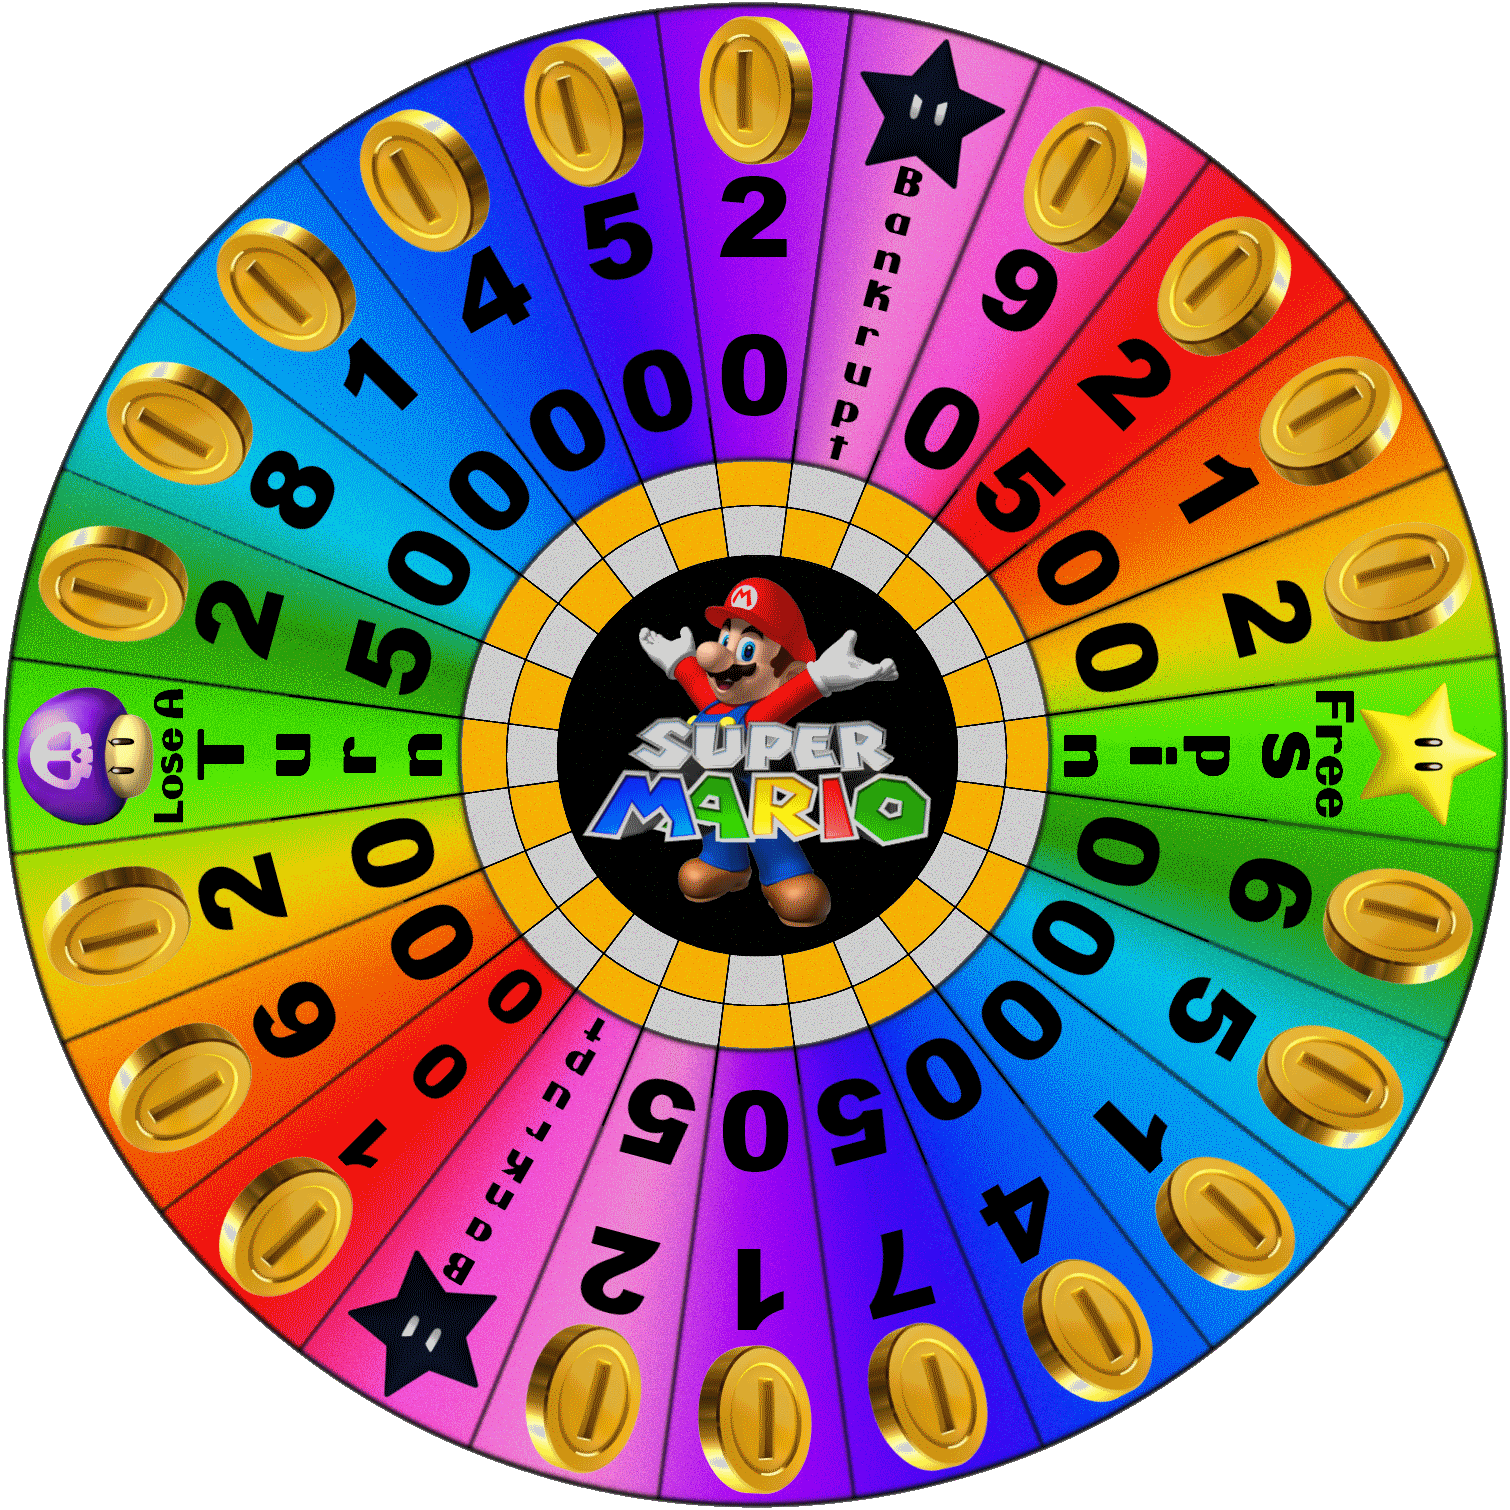 Wheel of Super Mario by LevelInfinitum on DeviantArt